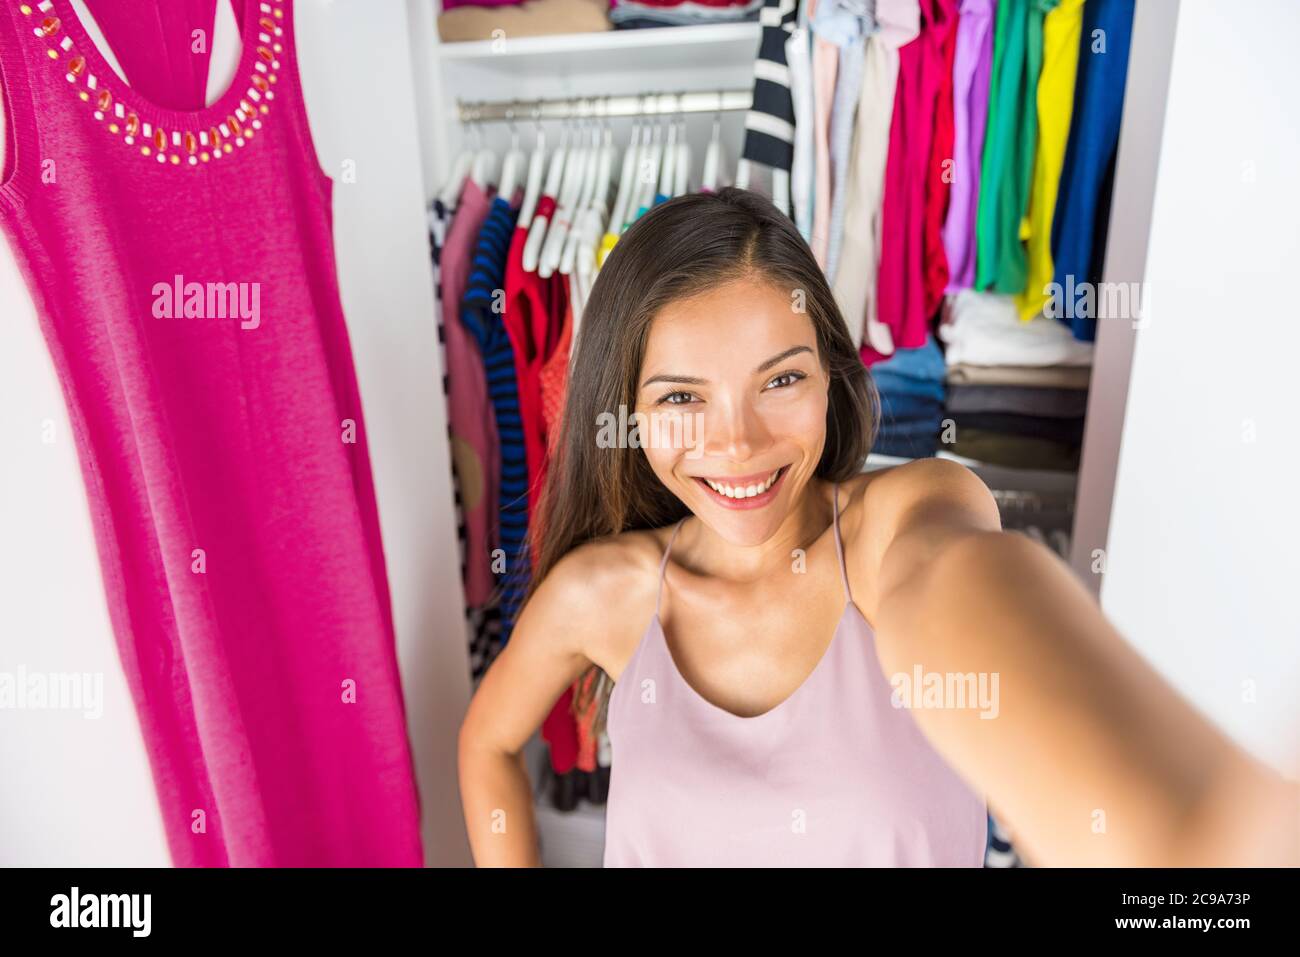 madchen ankleideraum selfie